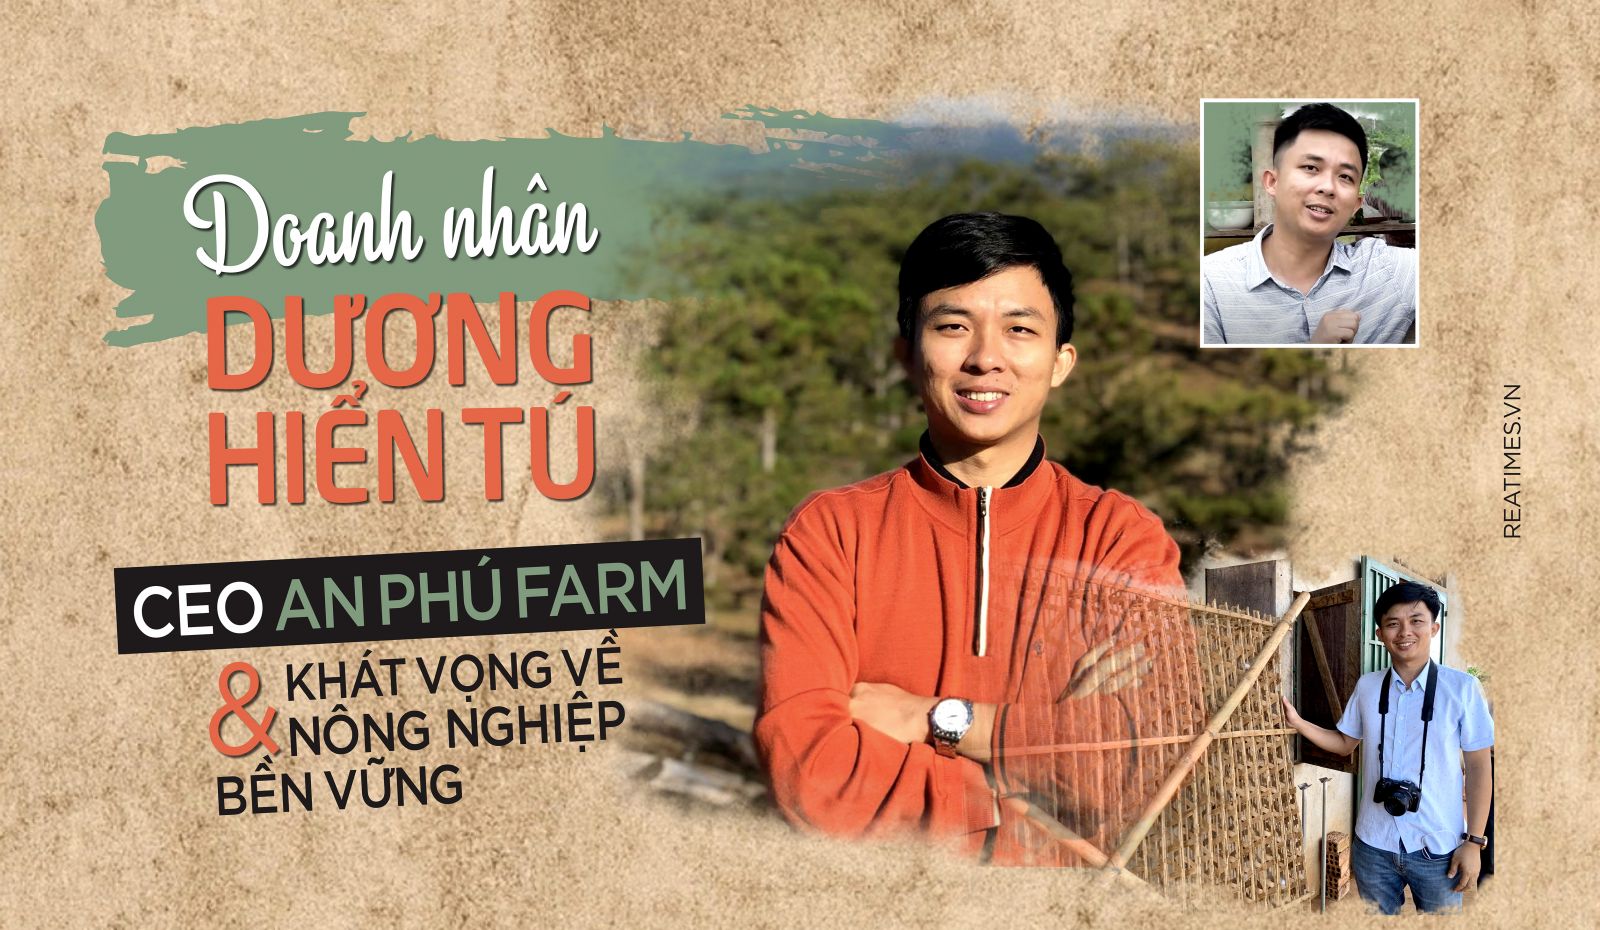 Doanh nhân Dương Hiển Tú - CEO An Phú Farm và khát vọng về nông nghiệp bền vững